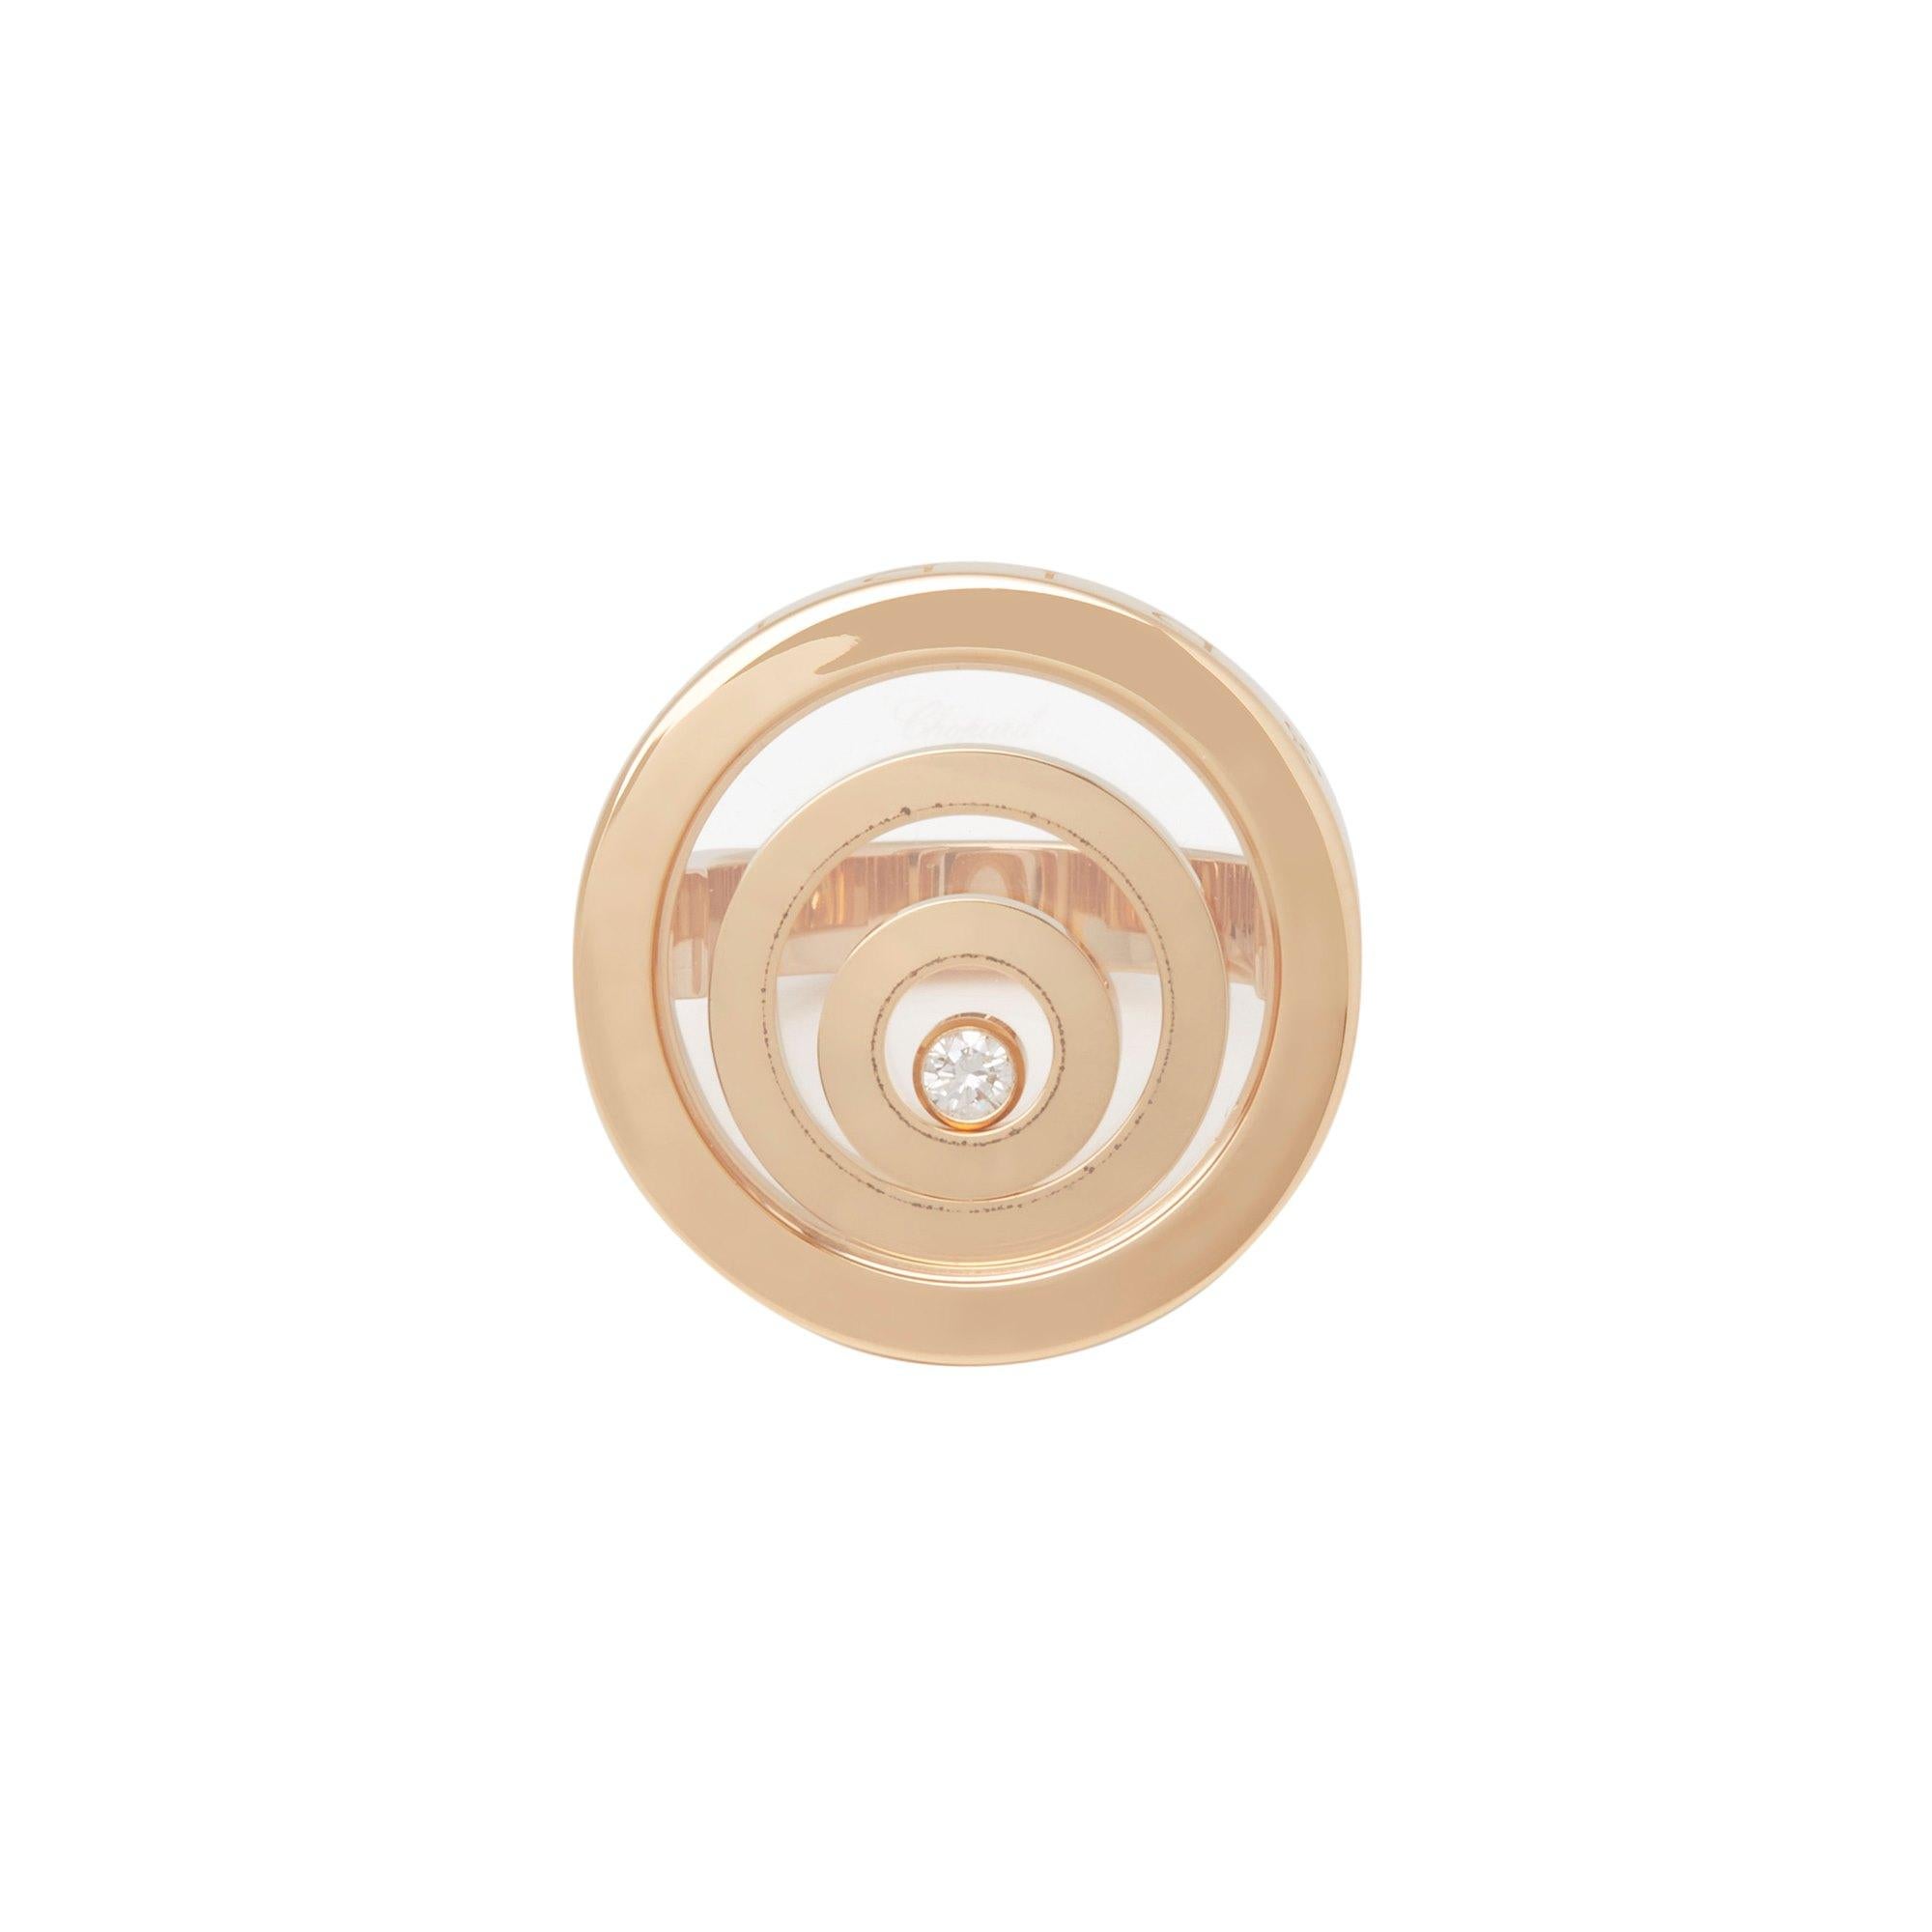 Happy Spirit Ring von Chopard, Diamant 18 Karat Gelbgold

Marke- Chopard
Modell- Happy Spirit Ring
Produkttyp- Ring
Seriennummer - 31*****
Alter- Circa 2009
Begleitet von- Chopard Box, Papiere
MATERIAL(e)- 18ct Gelbgold
Edelstein-Diamant
UK Ring